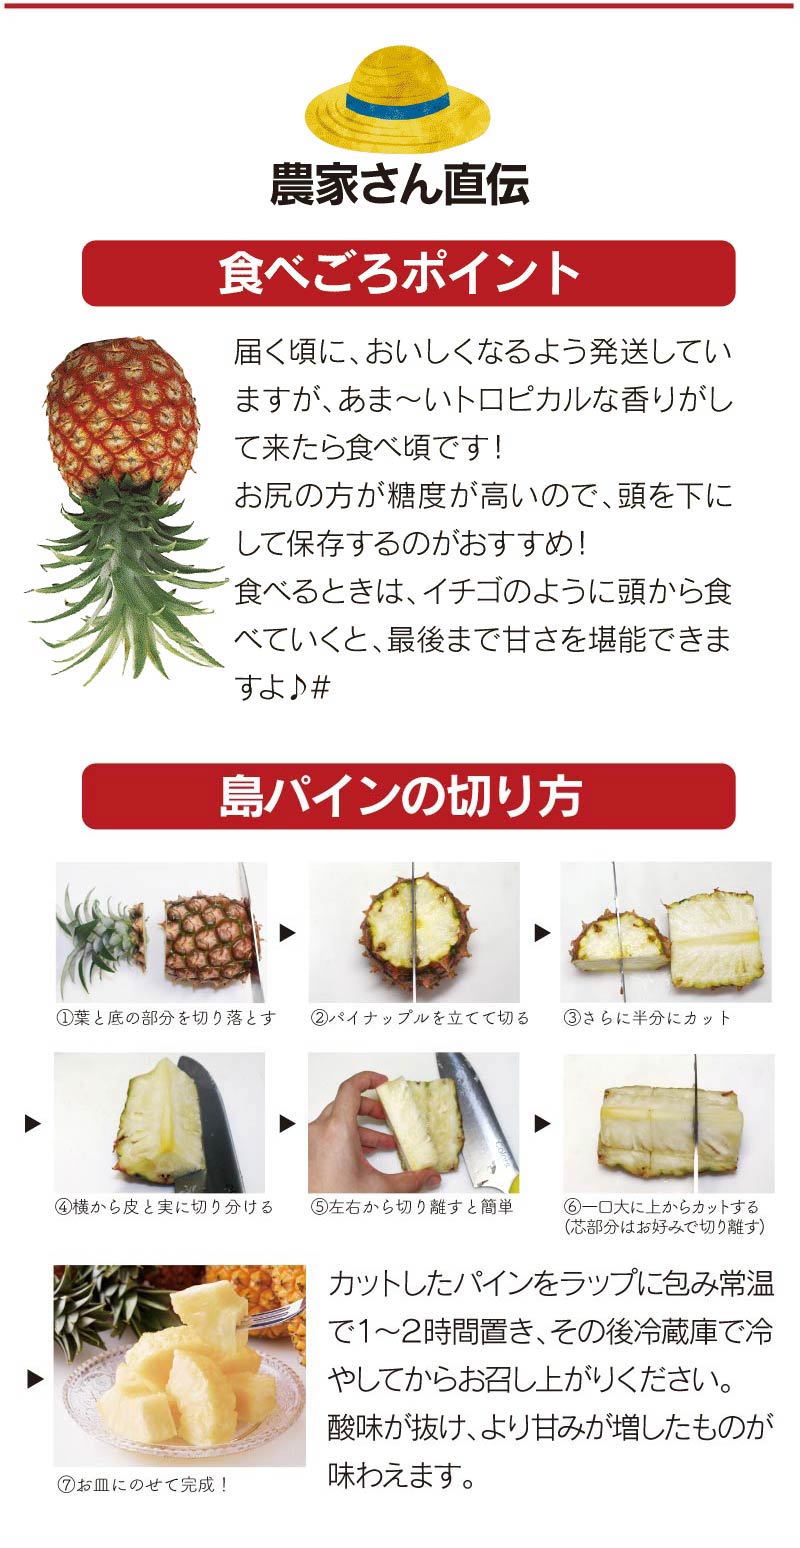 市場 沖縄 パイン パイナップル 約2玉 6玉入り 産地直送 南国フルーツ 送料無料 島パイン 2 5kg